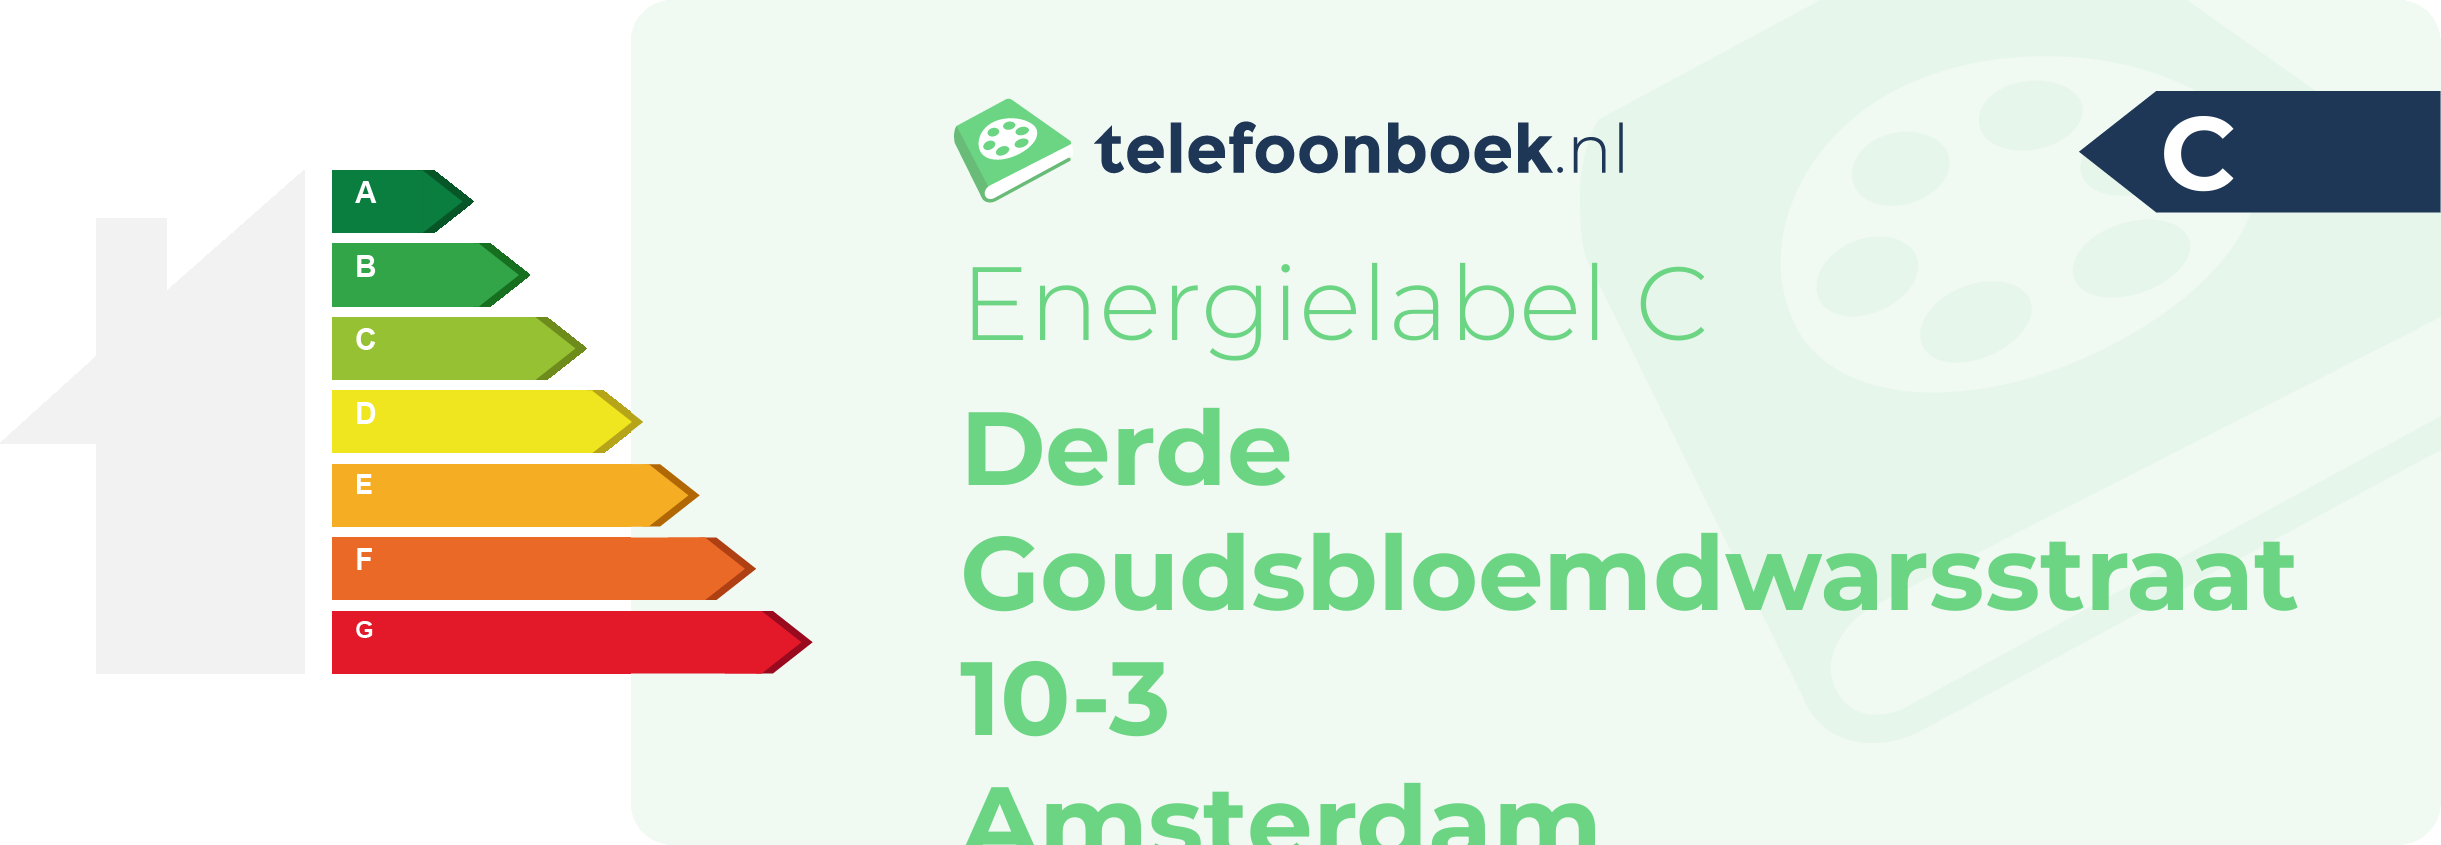 Energielabel Derde Goudsbloemdwarsstraat 10-3 Amsterdam